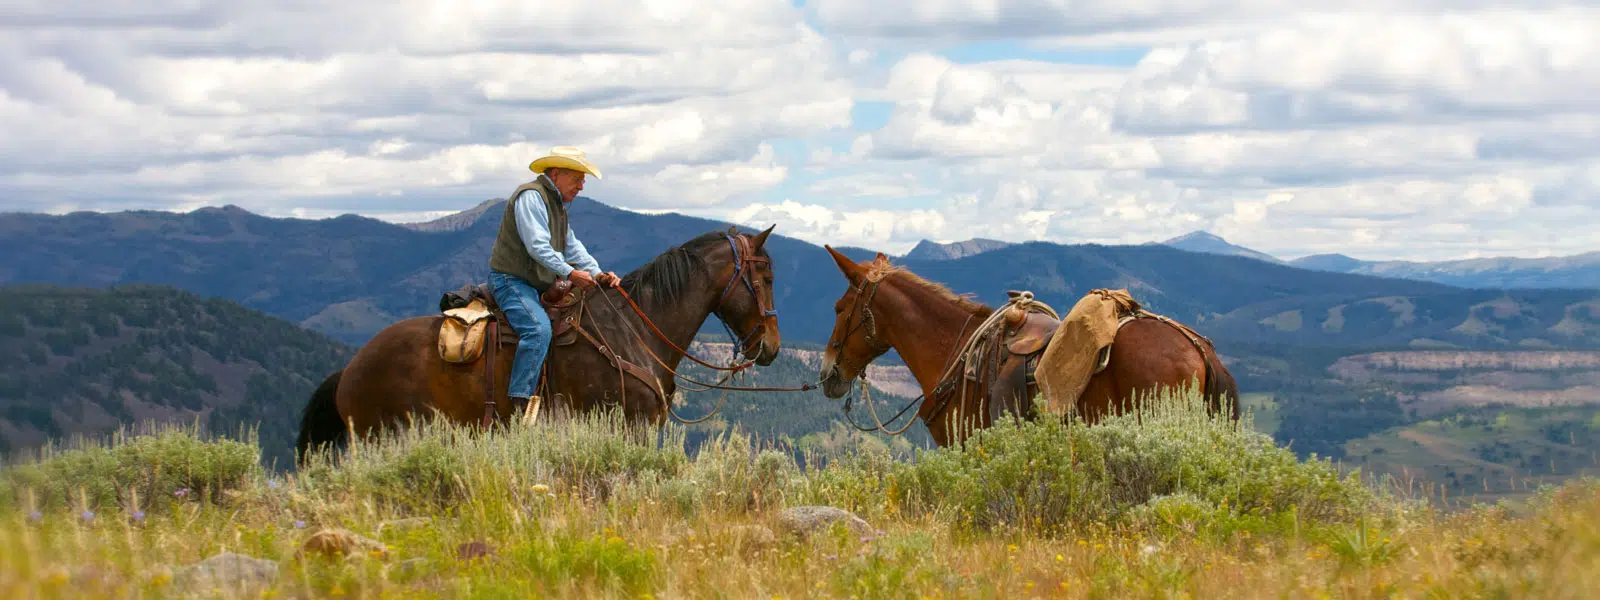 man on horseback in Montana